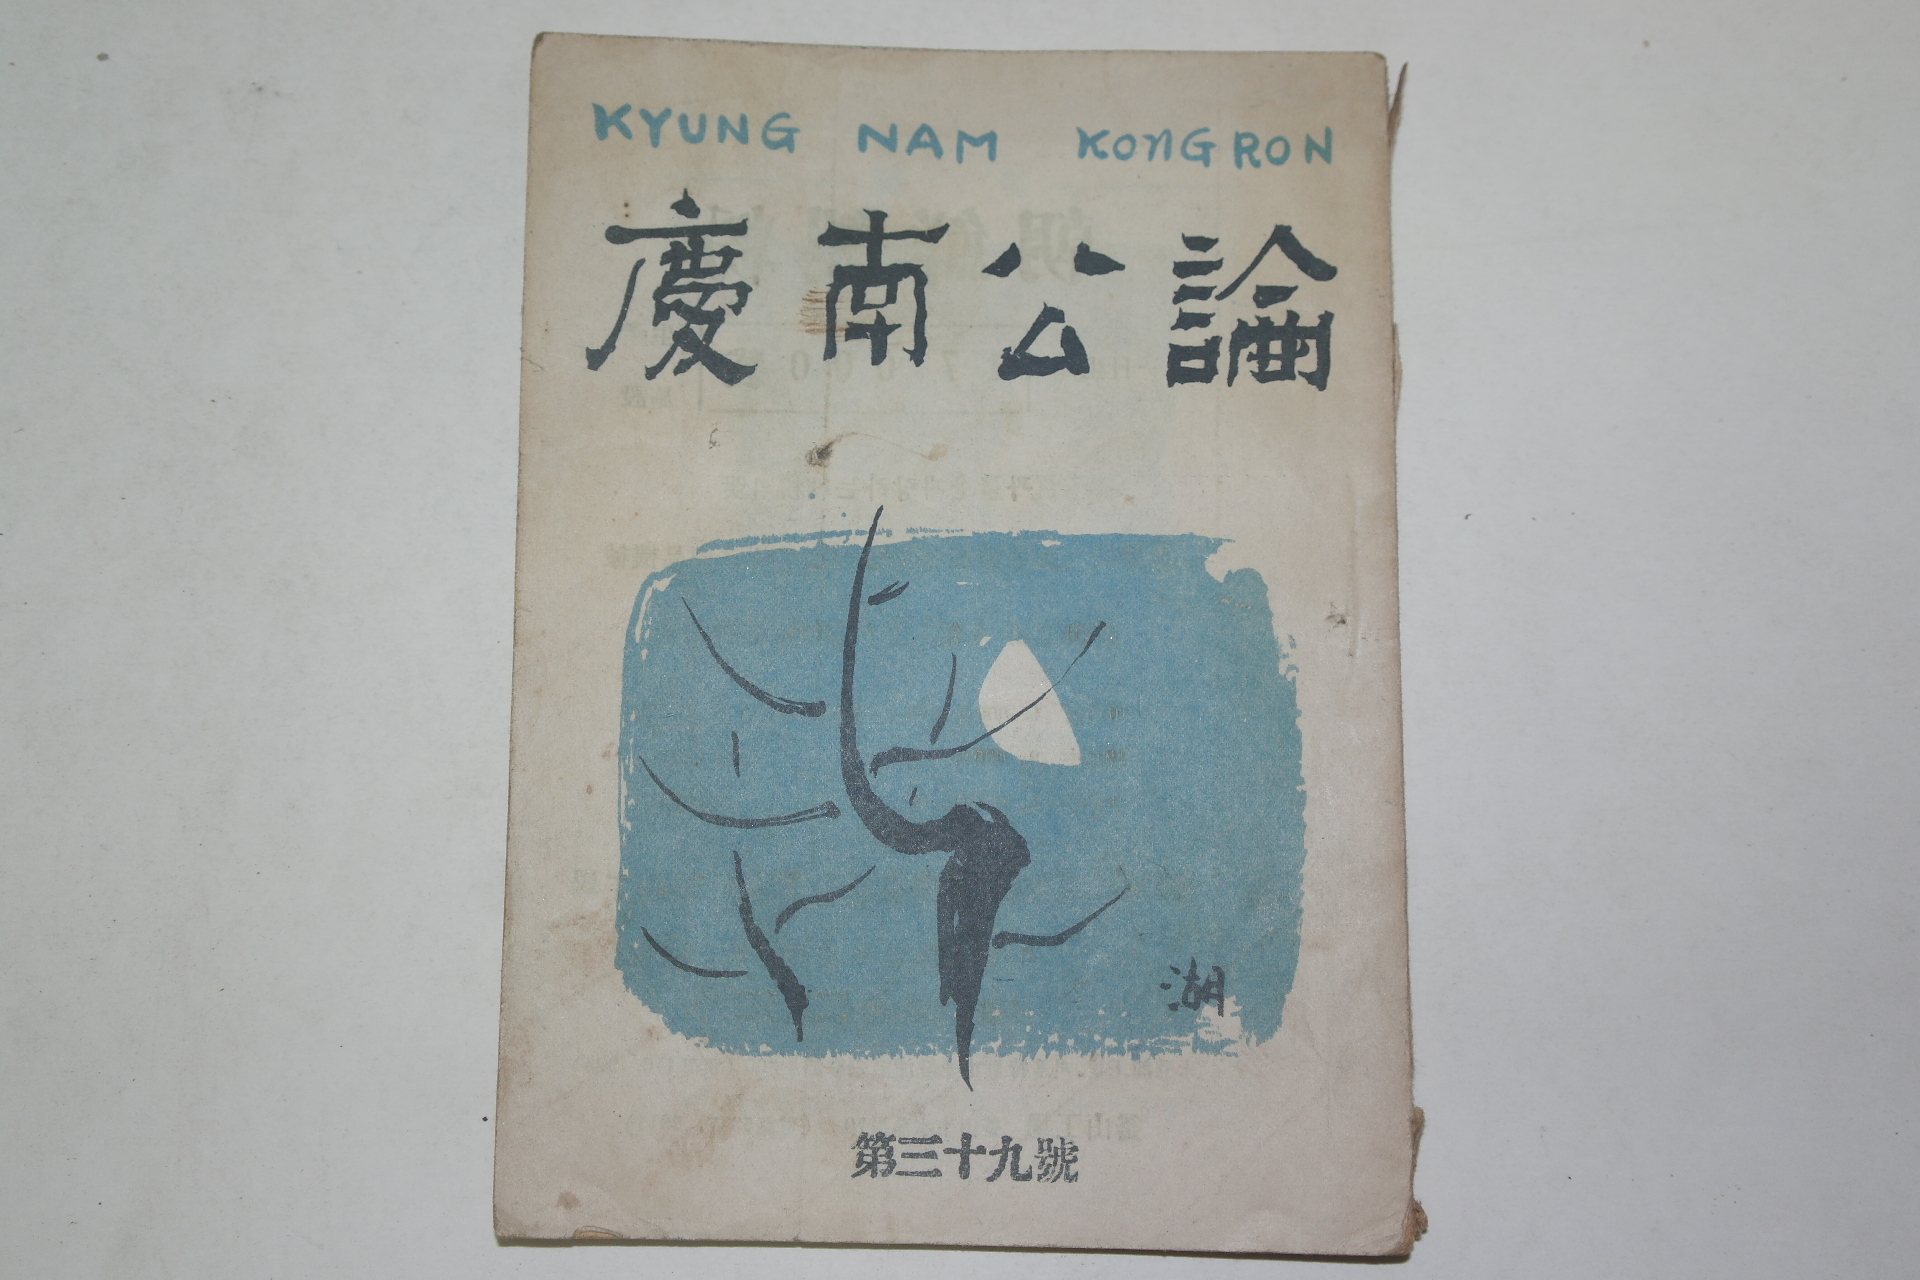 1952년 경남공론(慶南公論) 제39호